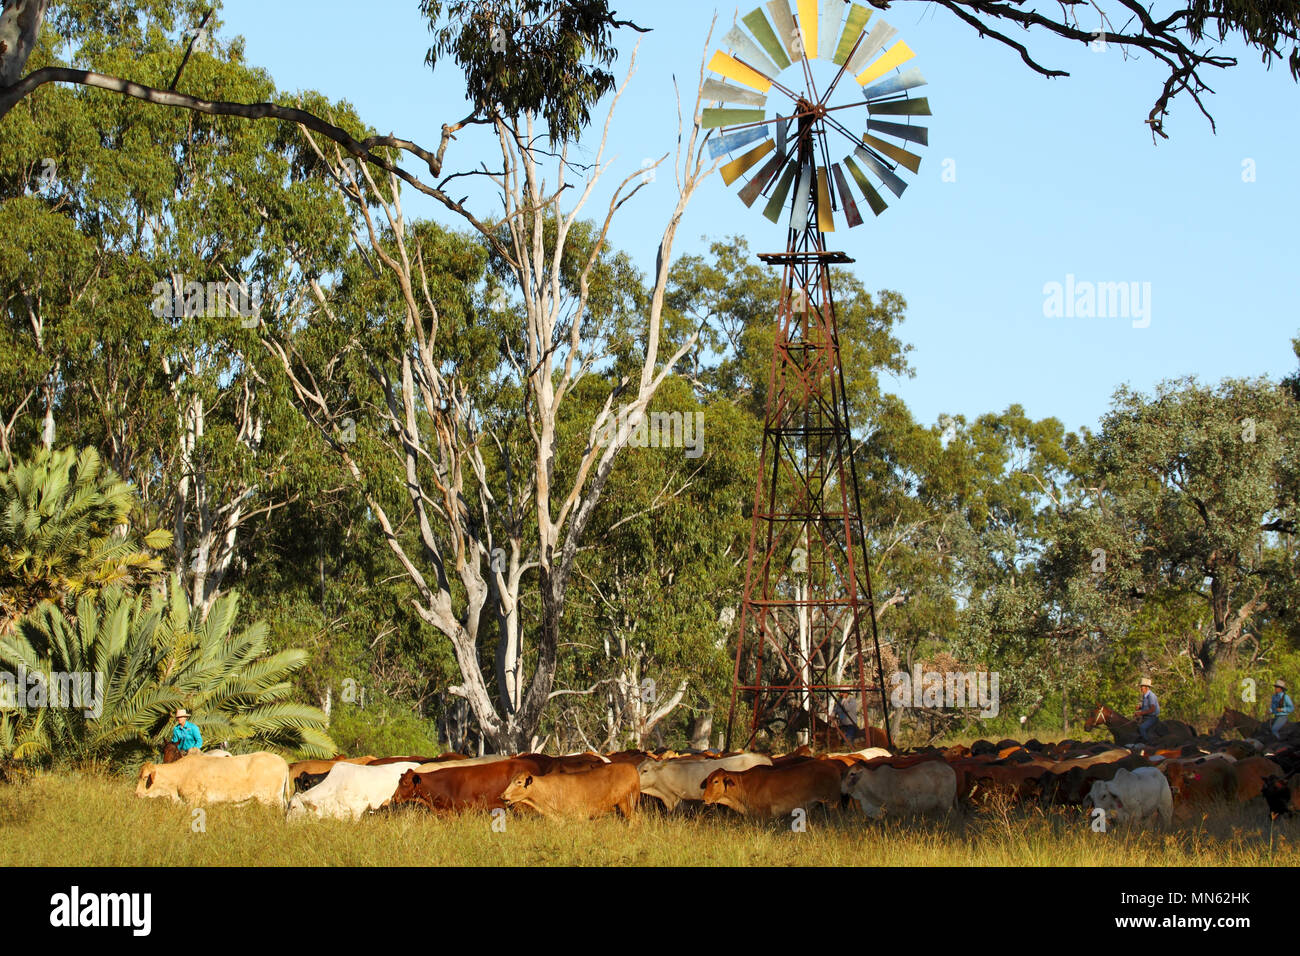 Raduno Stockmen bestiame passato un mulino a vento e gumtrees. Foto Stock